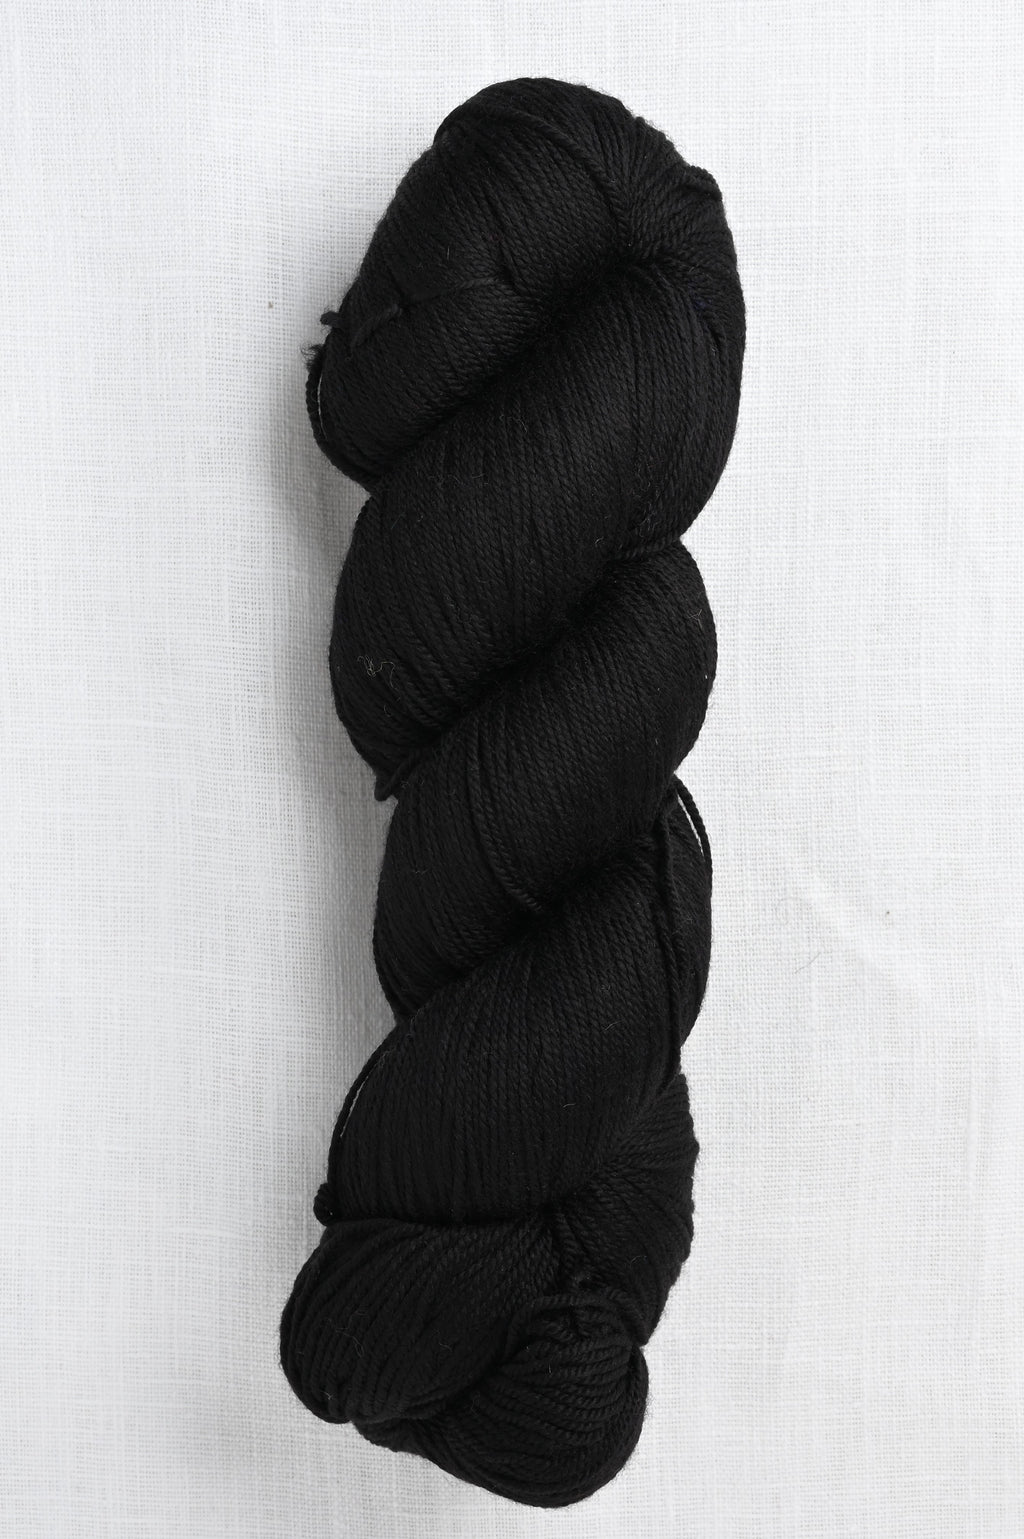 Medium Gauge Worsted Weight Cotton Yarn - 100 Grams Per Skein - Black - 1  Skein